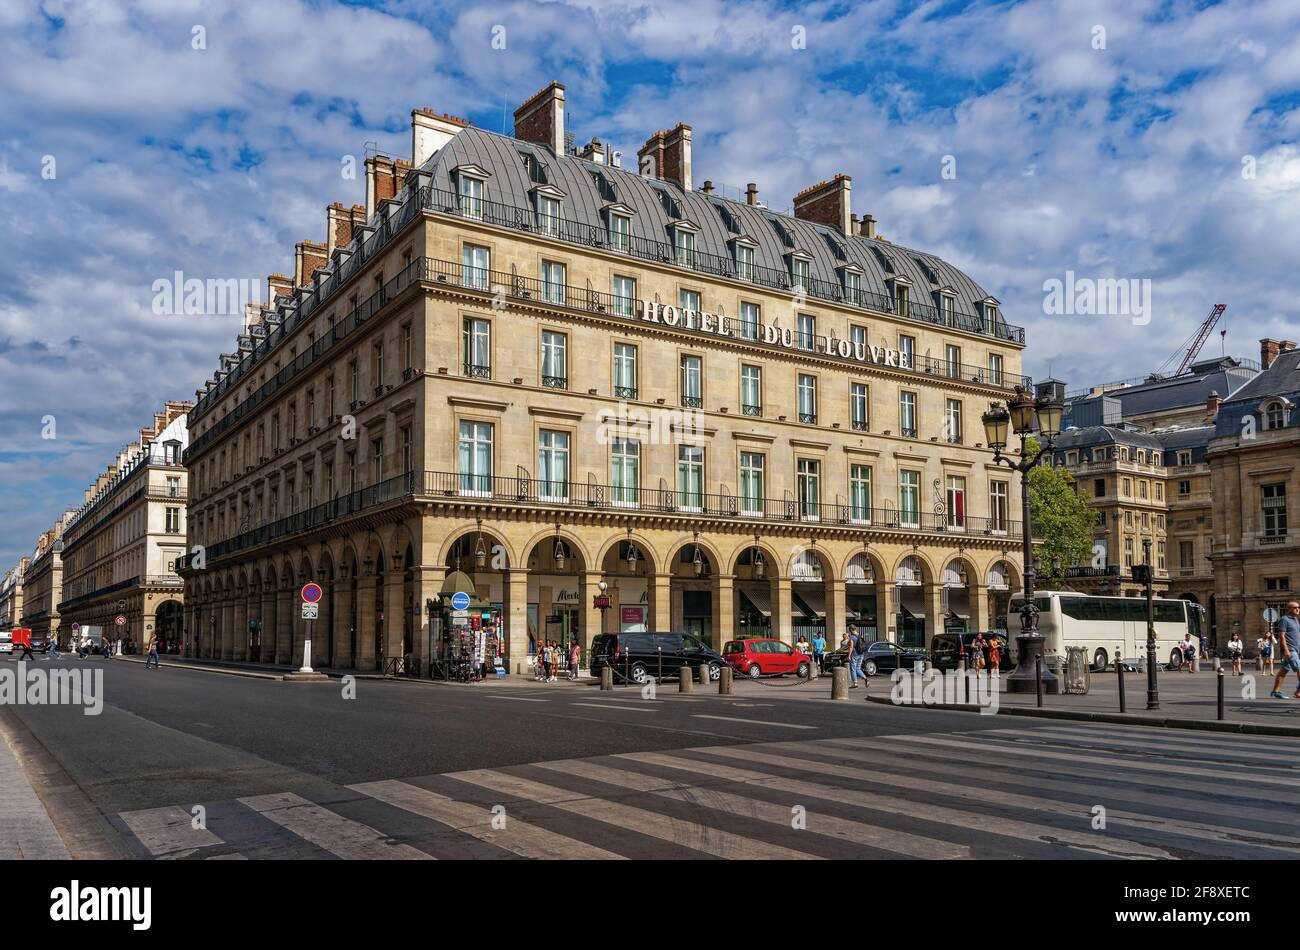 Architecture By Hotel Du Louvre, Paris, Ile De France, France Stock Photo